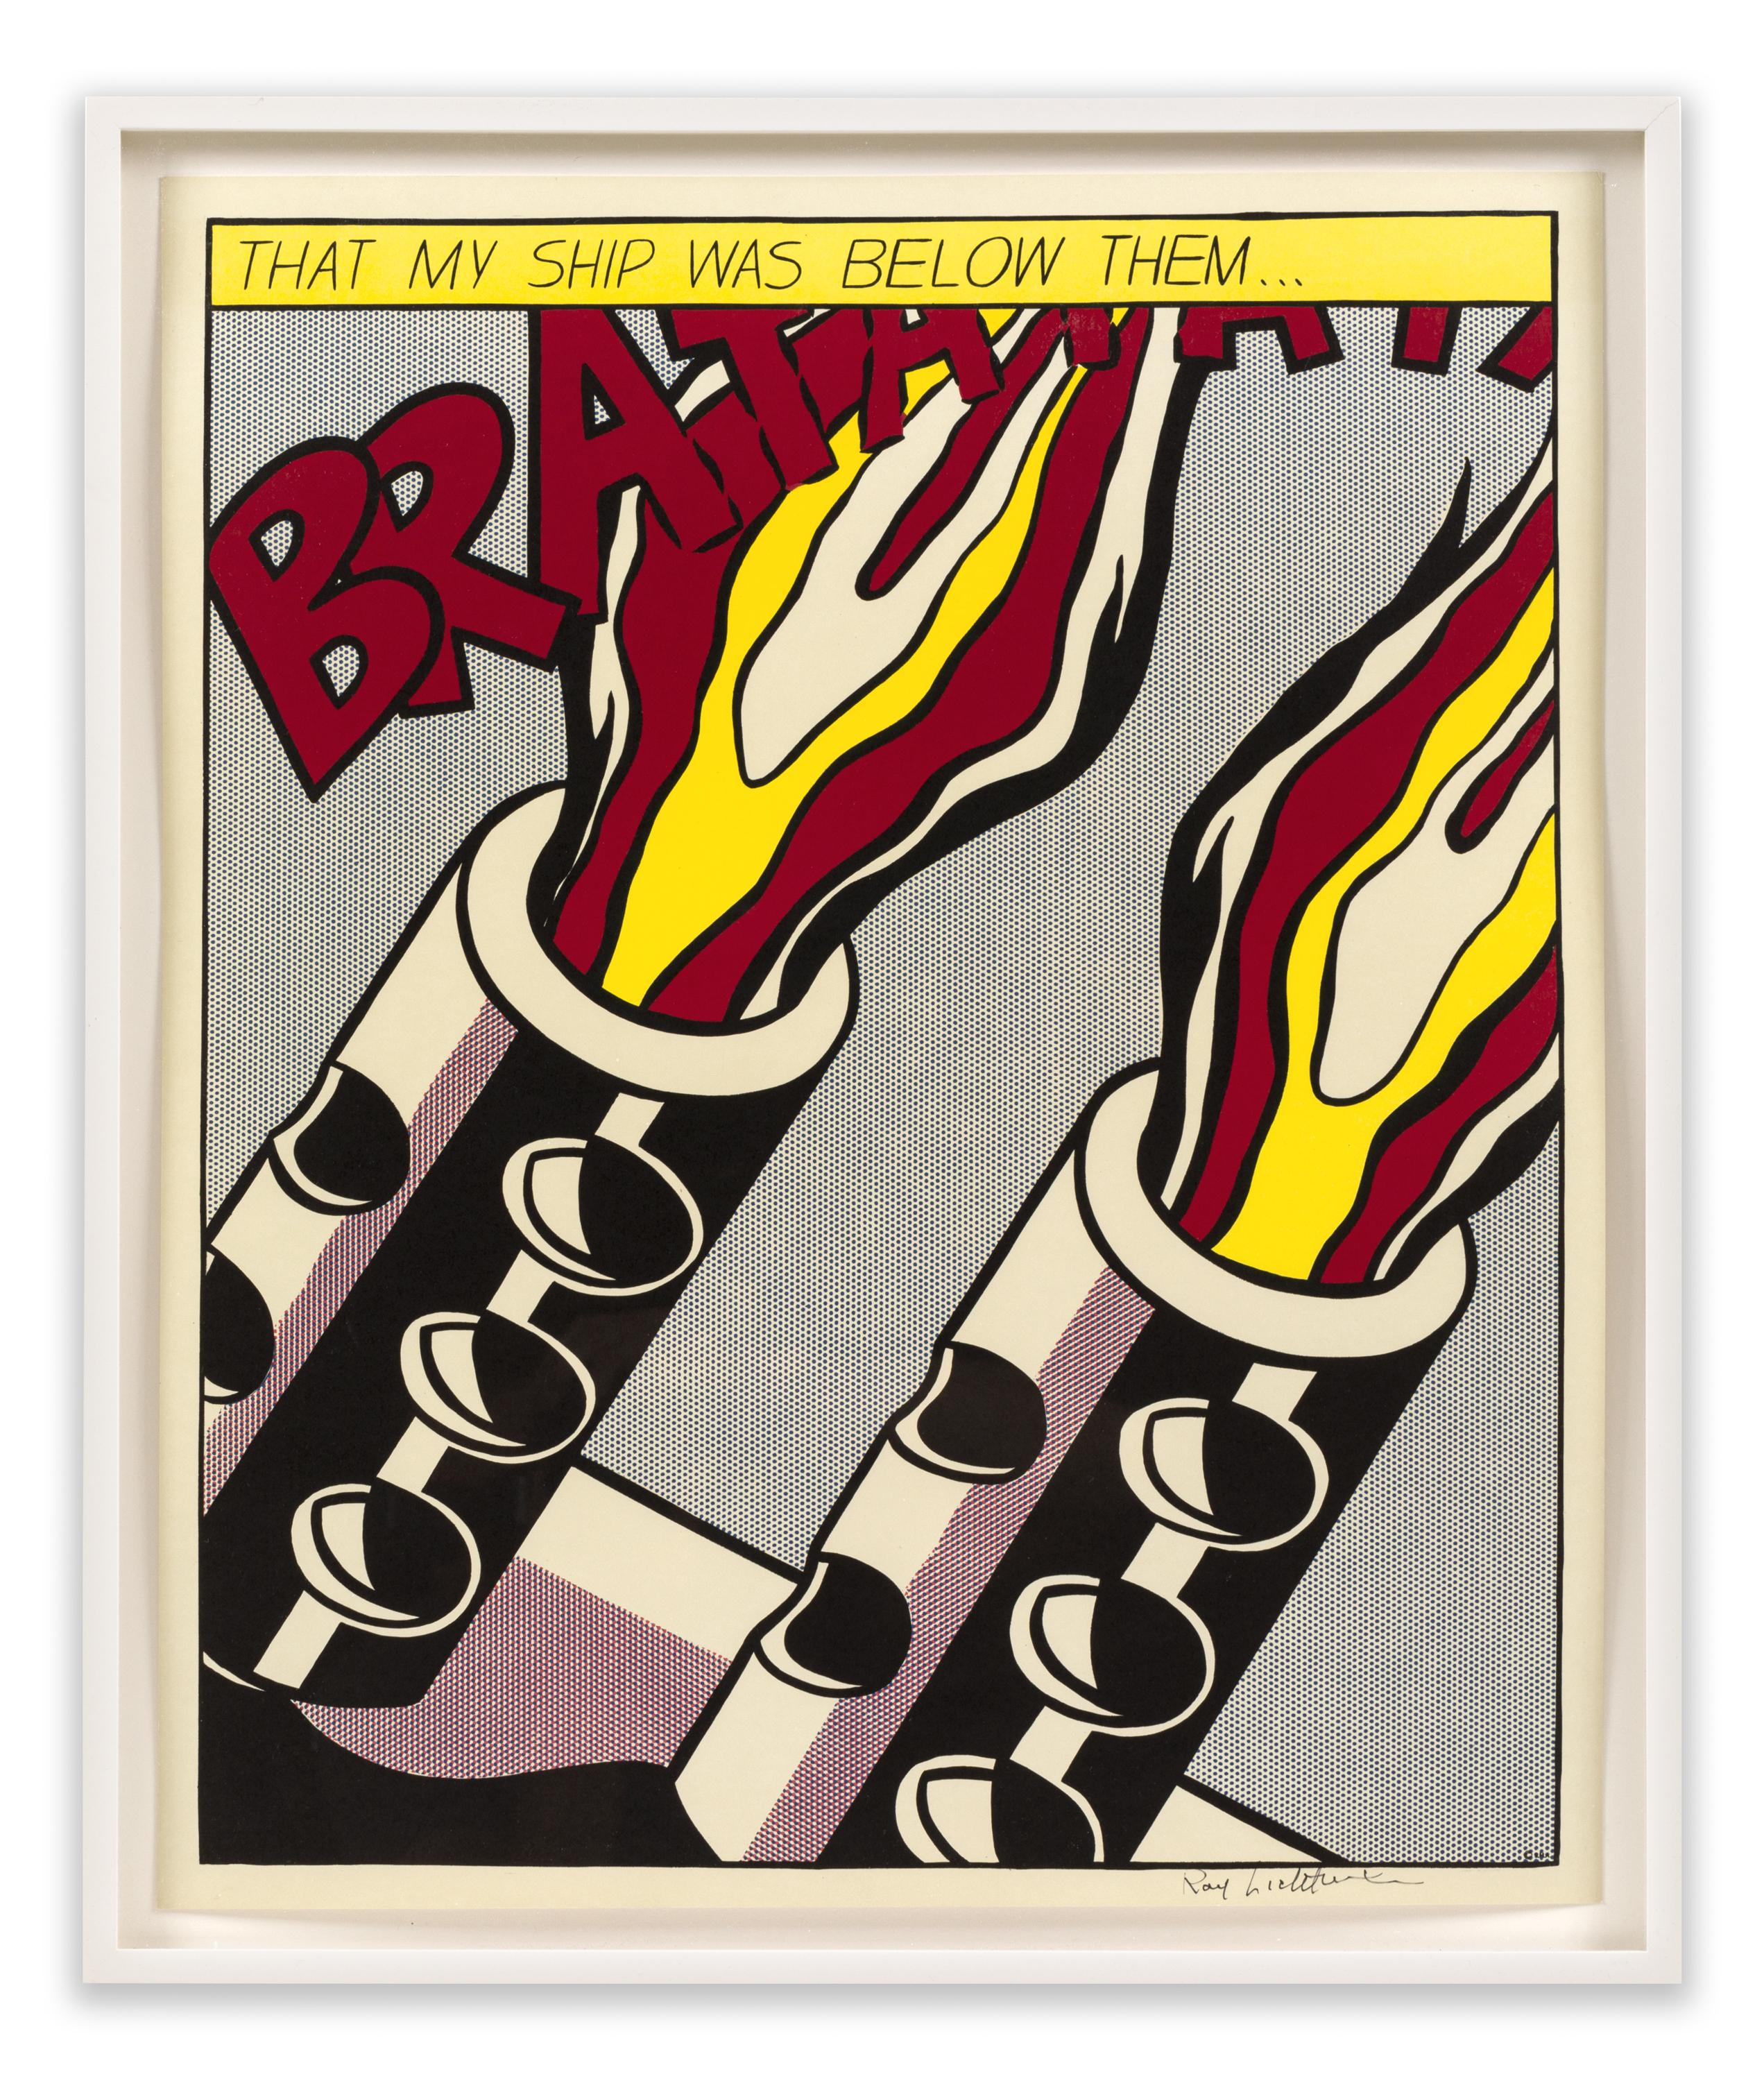 Dutch Roy Lichtenstein Signed Triptych 